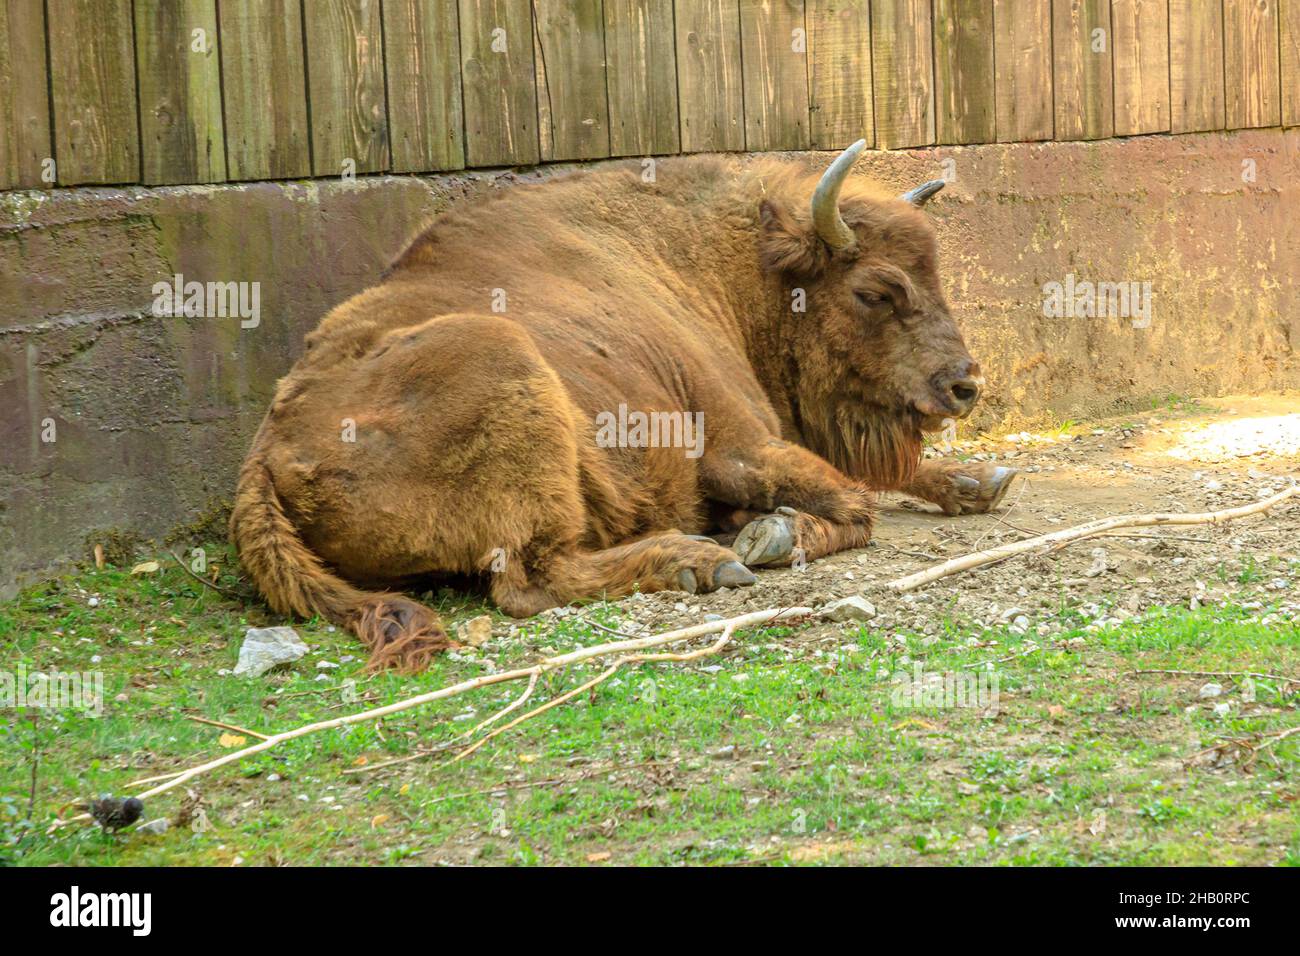 Vista ravvicinata del bufalo europeo adulto d'Europa o del pascolo in erba. Famiglia di bisonti bonasus. Anche conosciuto come bisonte europeo del legno. Foto Stock